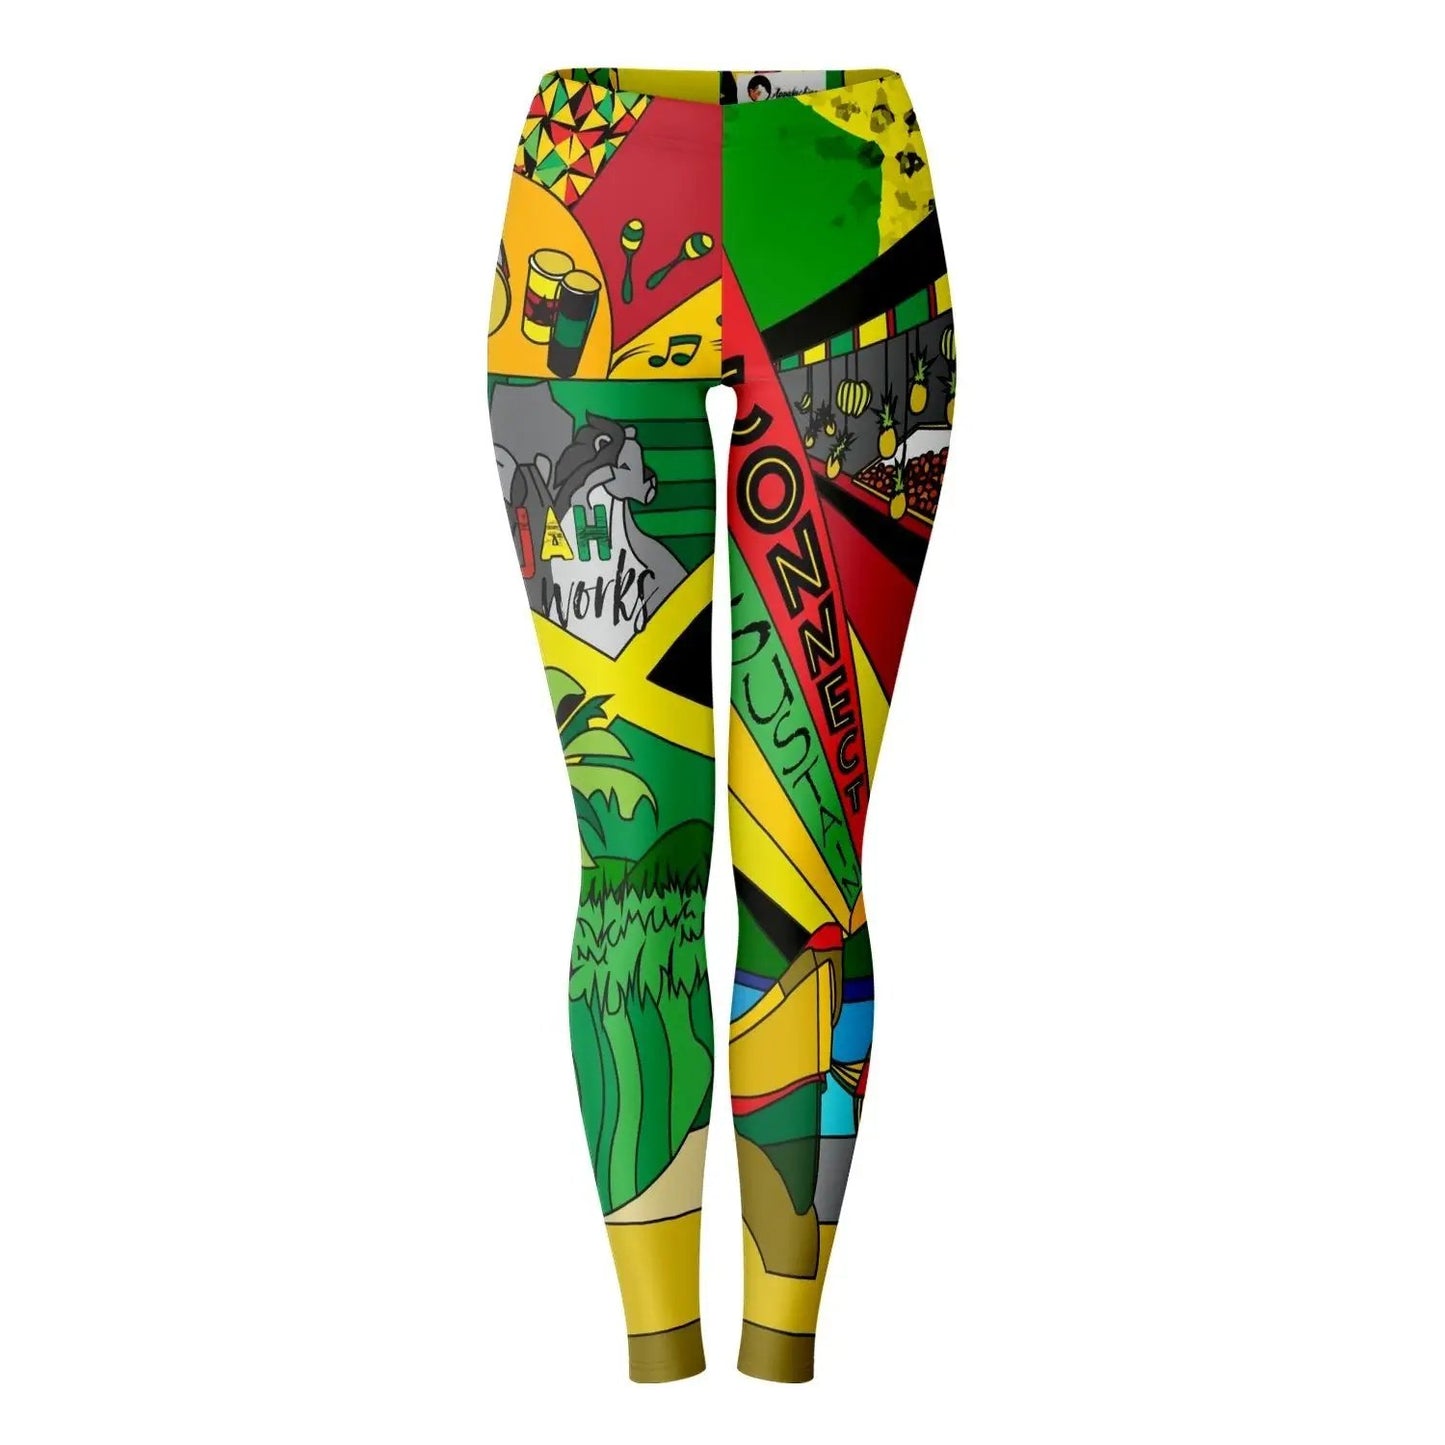 Jah Works Give Back Leggings Color